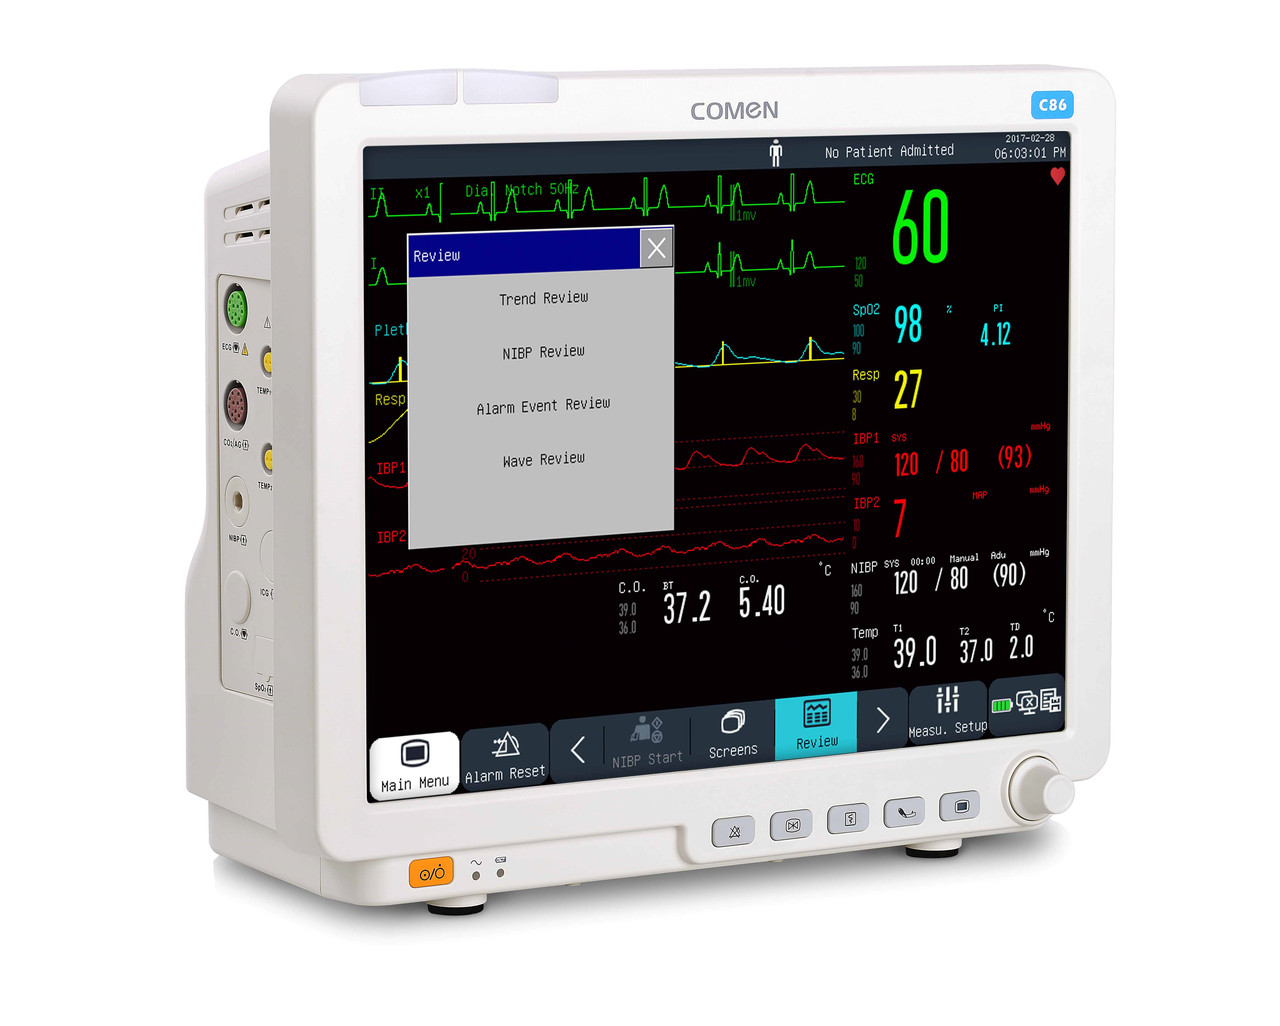 Прикроватные мониторы пациента для всех отделений больницы к модульного монитора модель C86